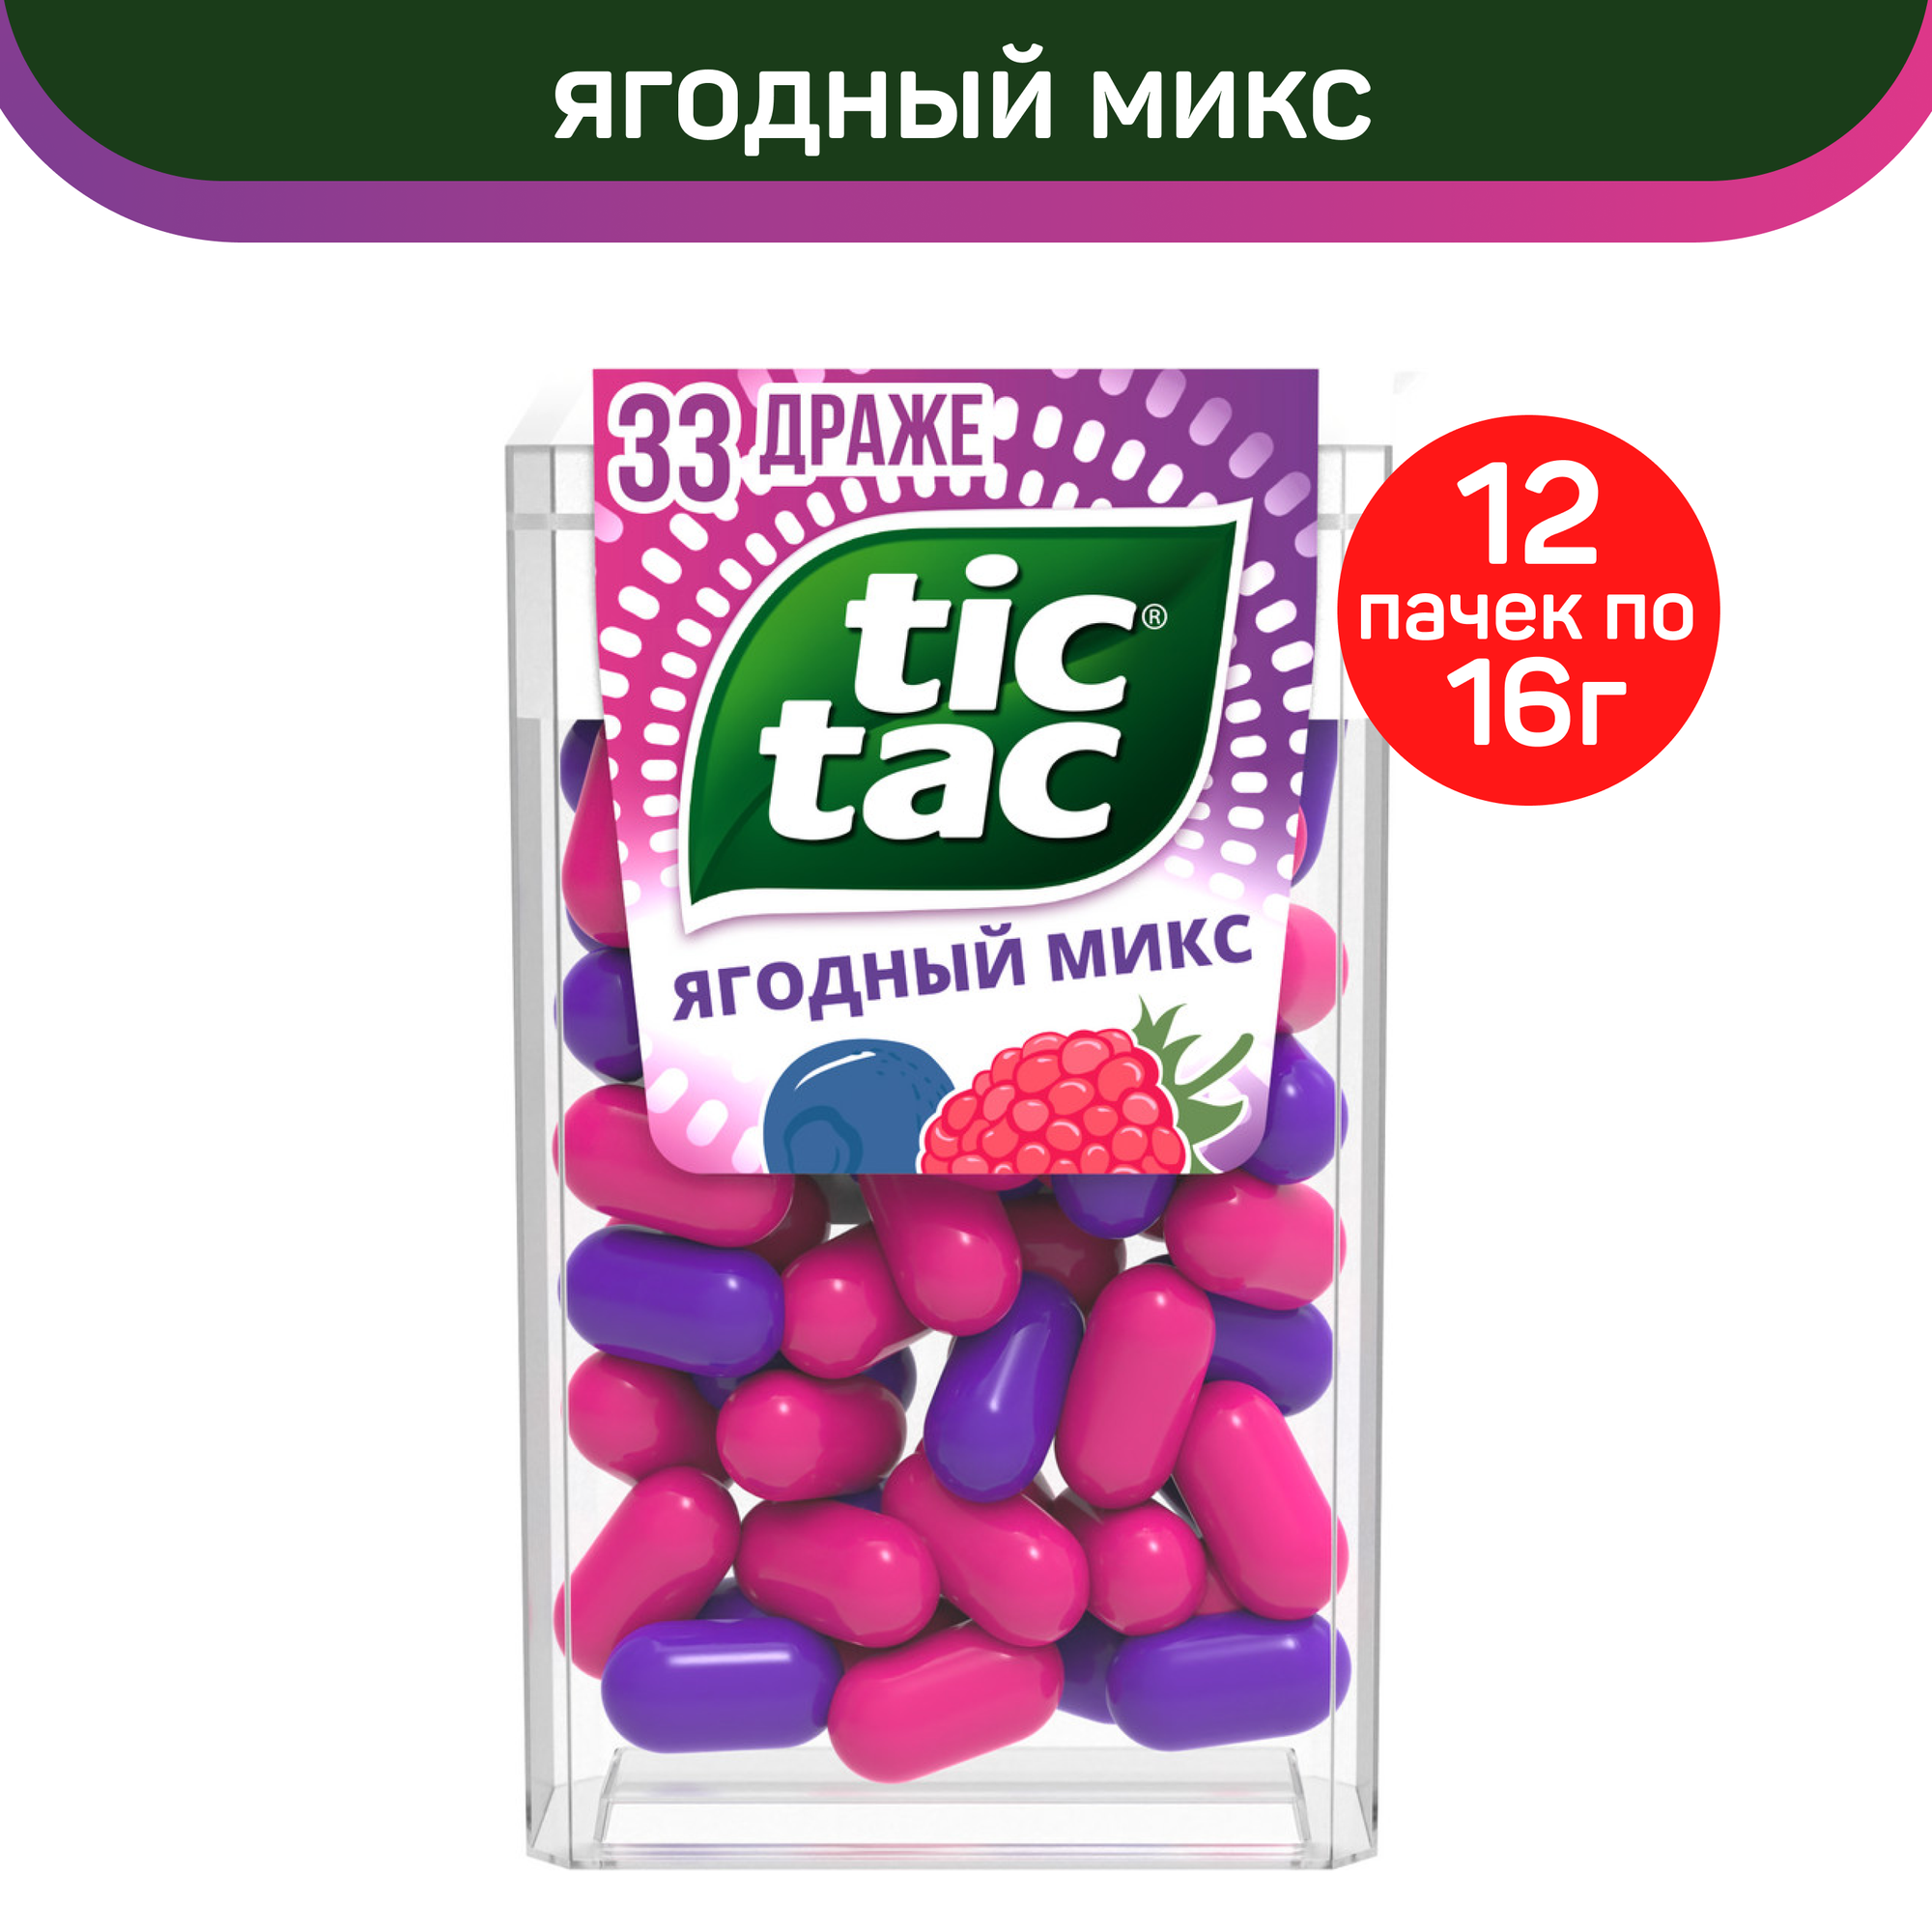 Драже Tic Tac, со вкусом Ягодный Микс, 12 шт по 16 г